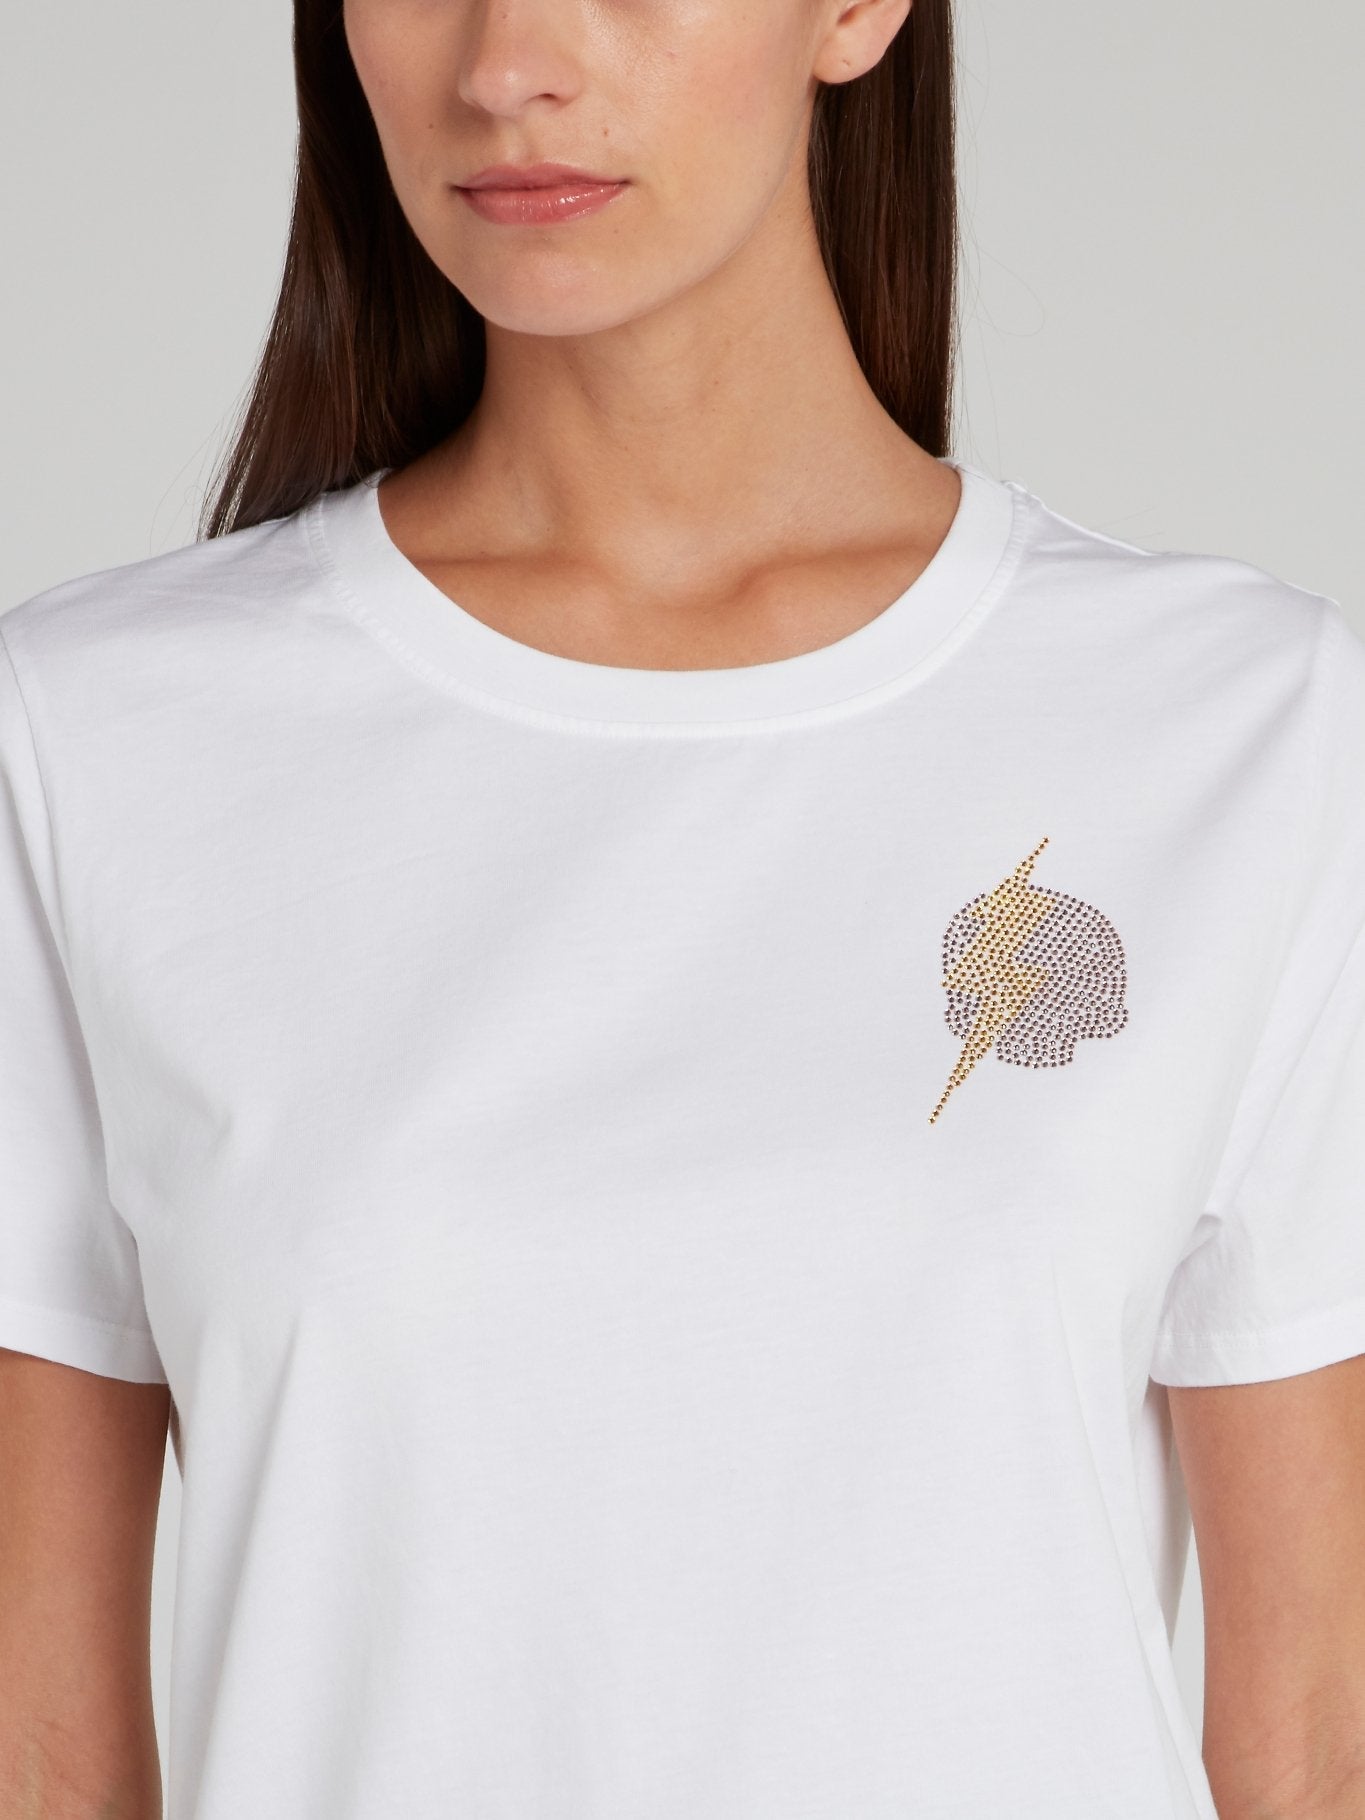 Giselle White Studded T-Shirt